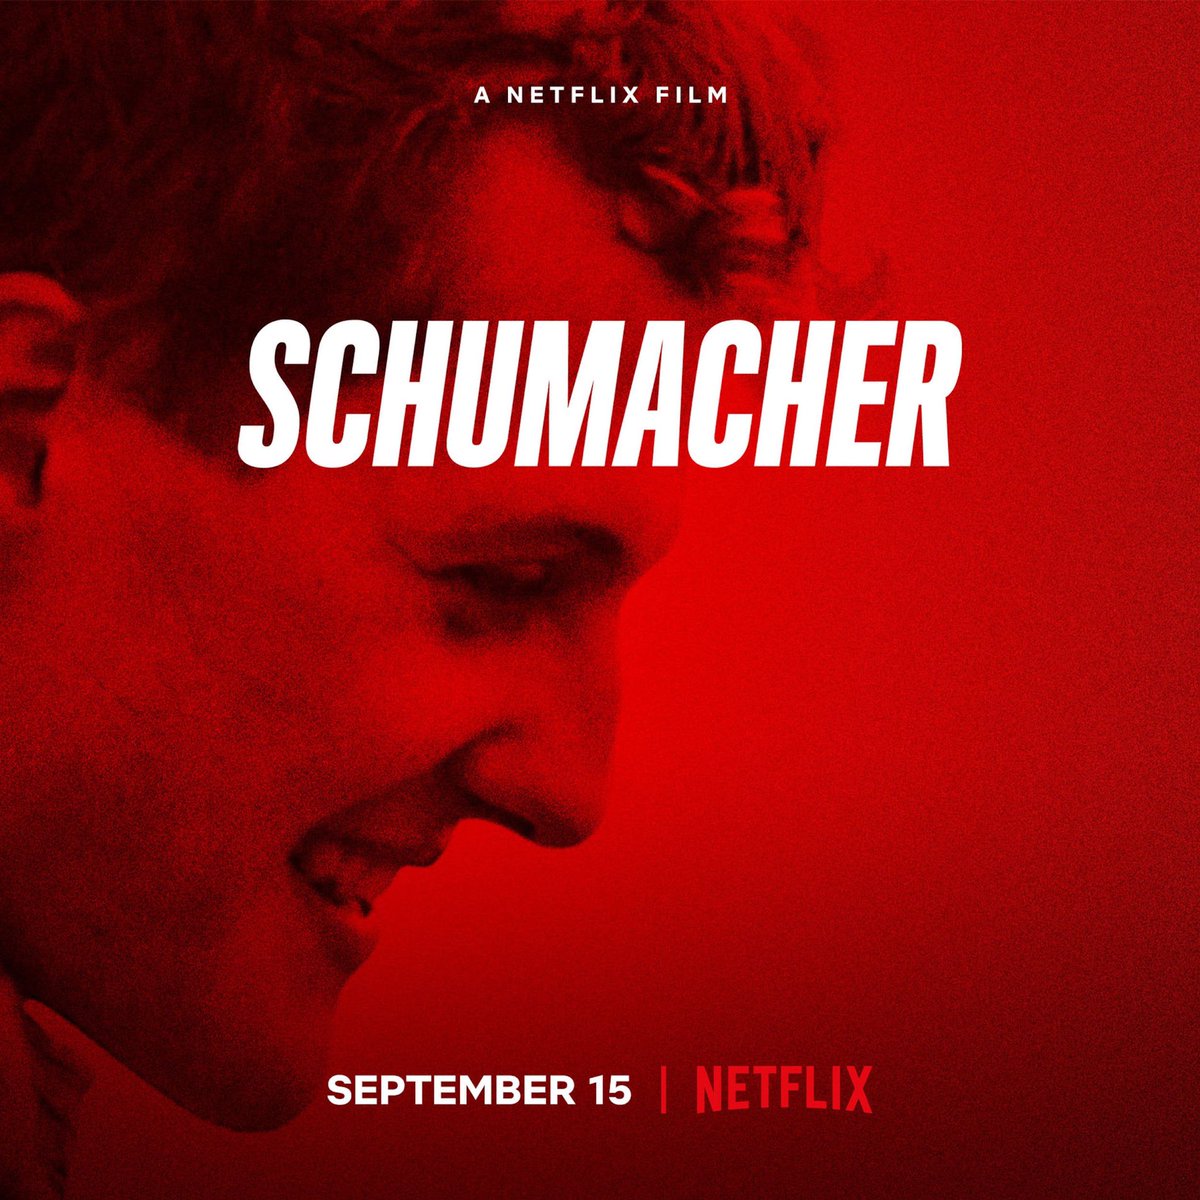 SCHUMACHER. Out on Netflix now♥️ #keepfighting